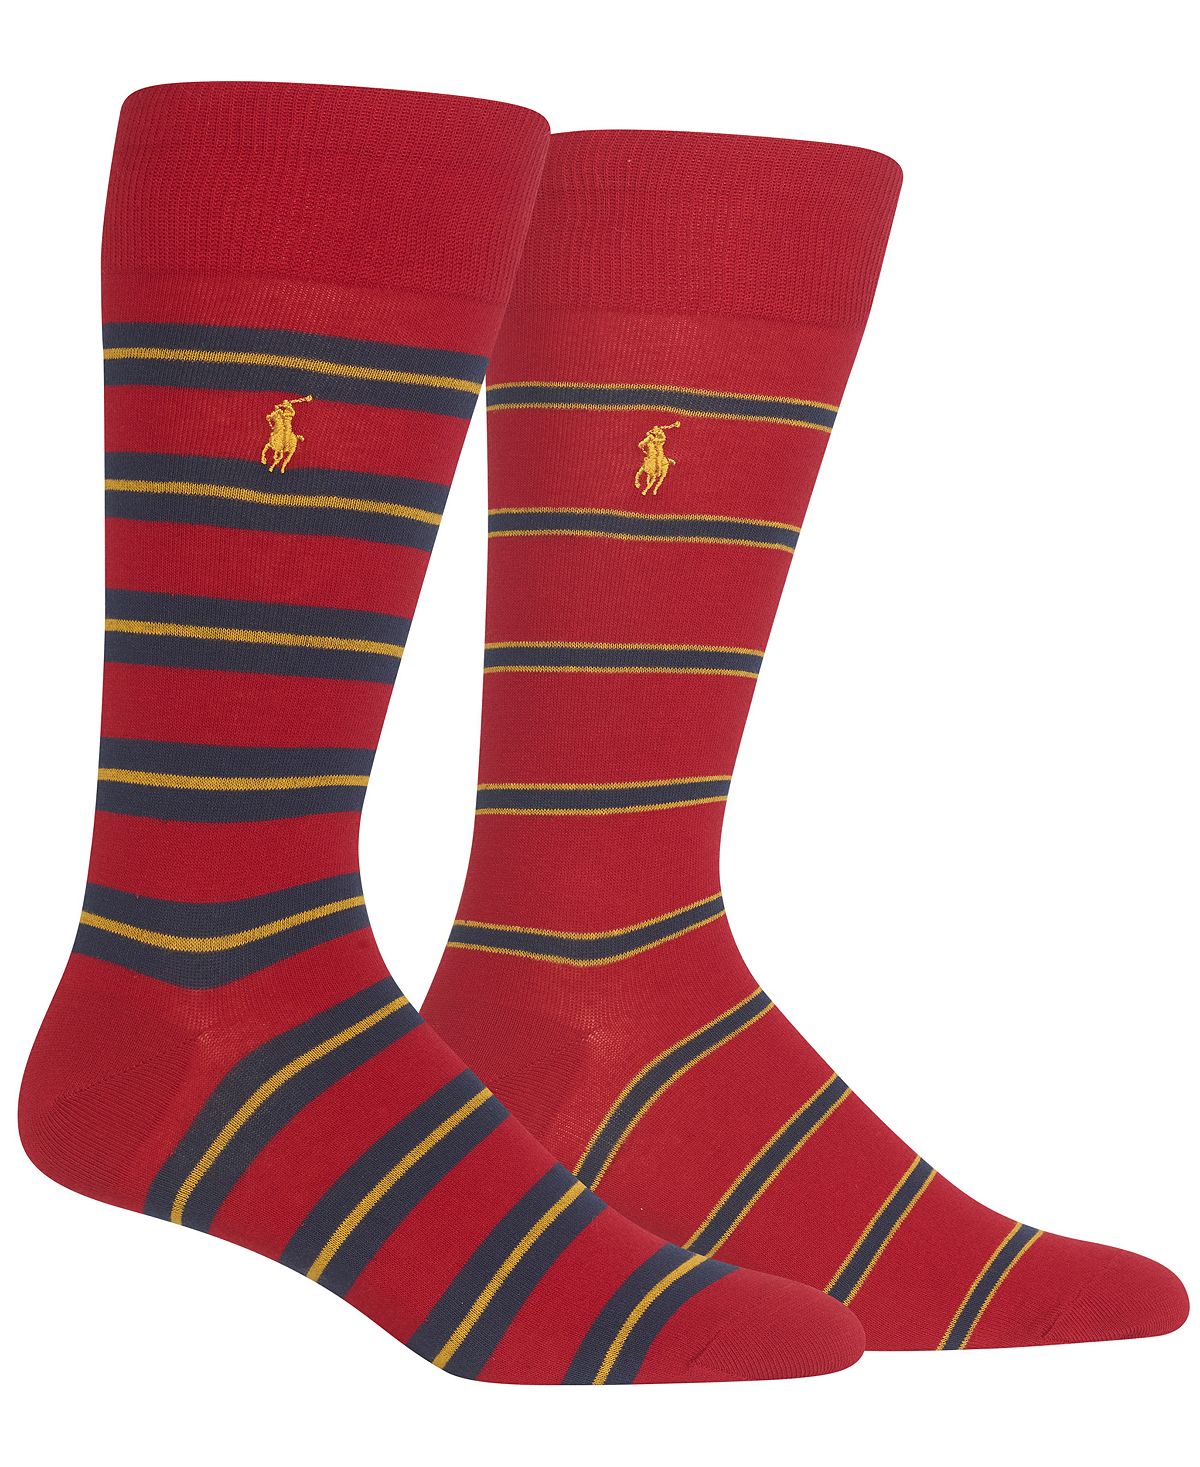 Polo Ralph Lauren 2-pk. Striped Socks Red